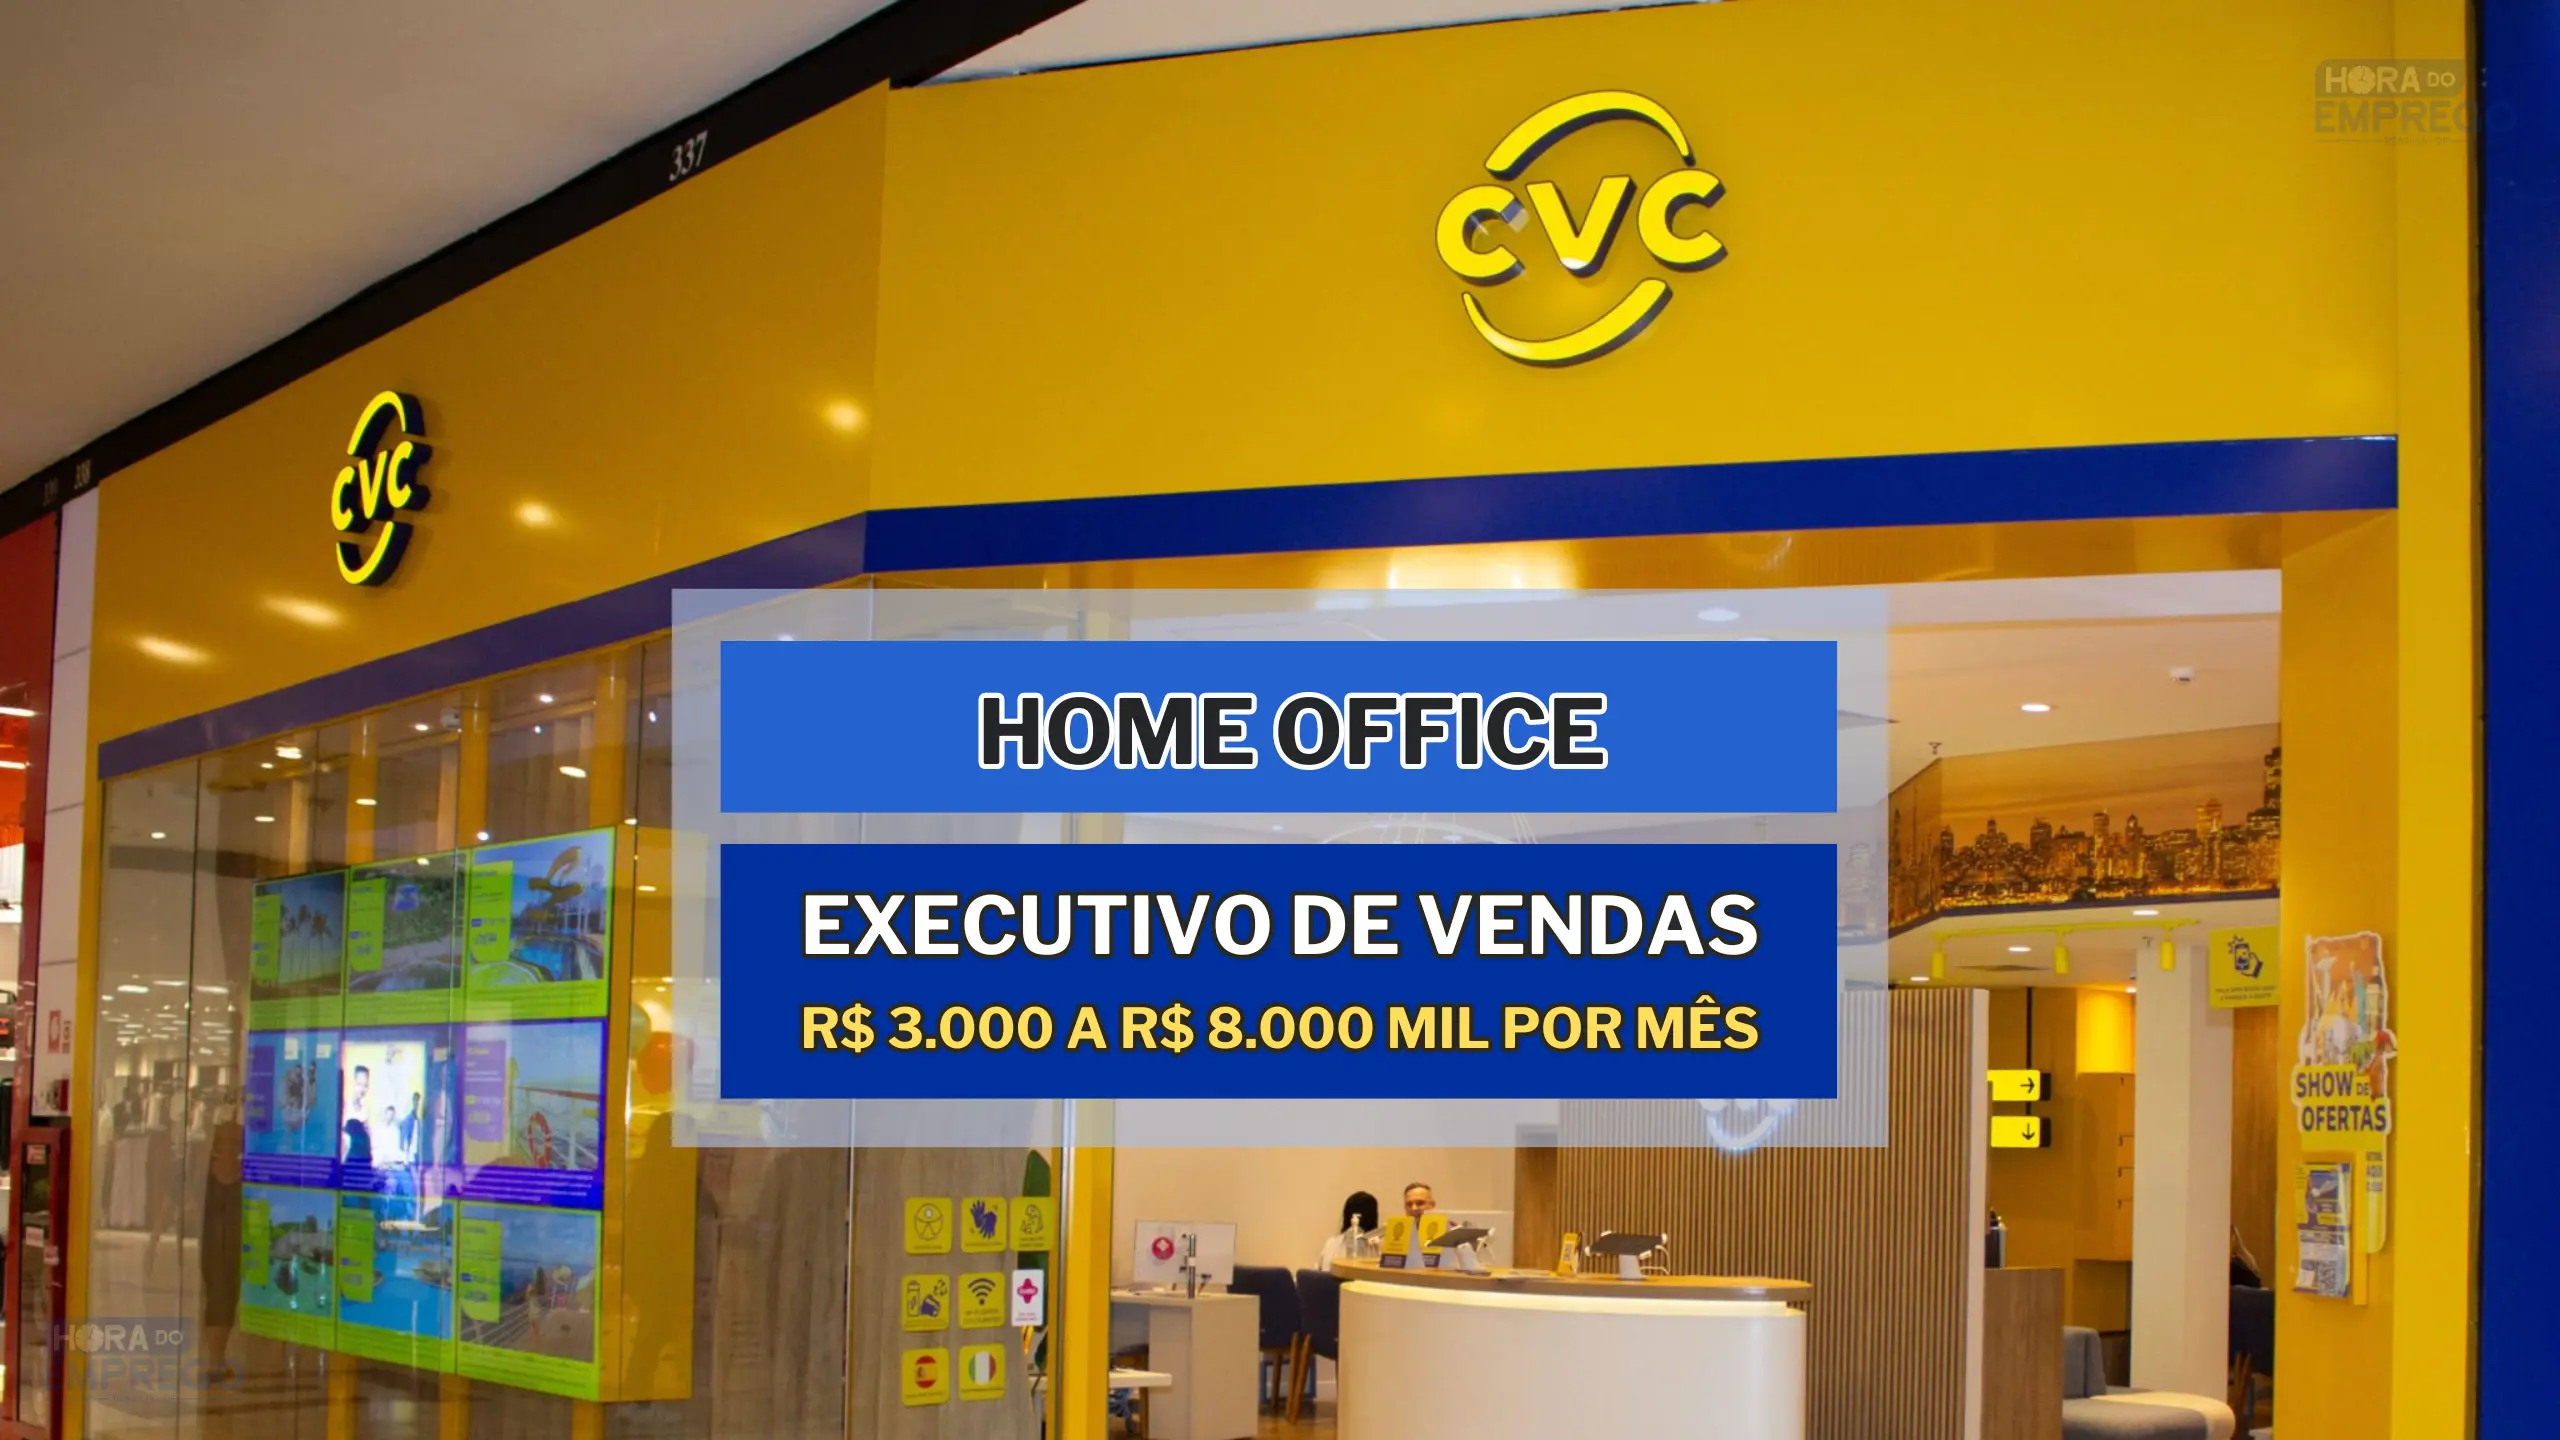 CVC Corp anunciou novas vagas HOME OFFICE no Setor de vendas